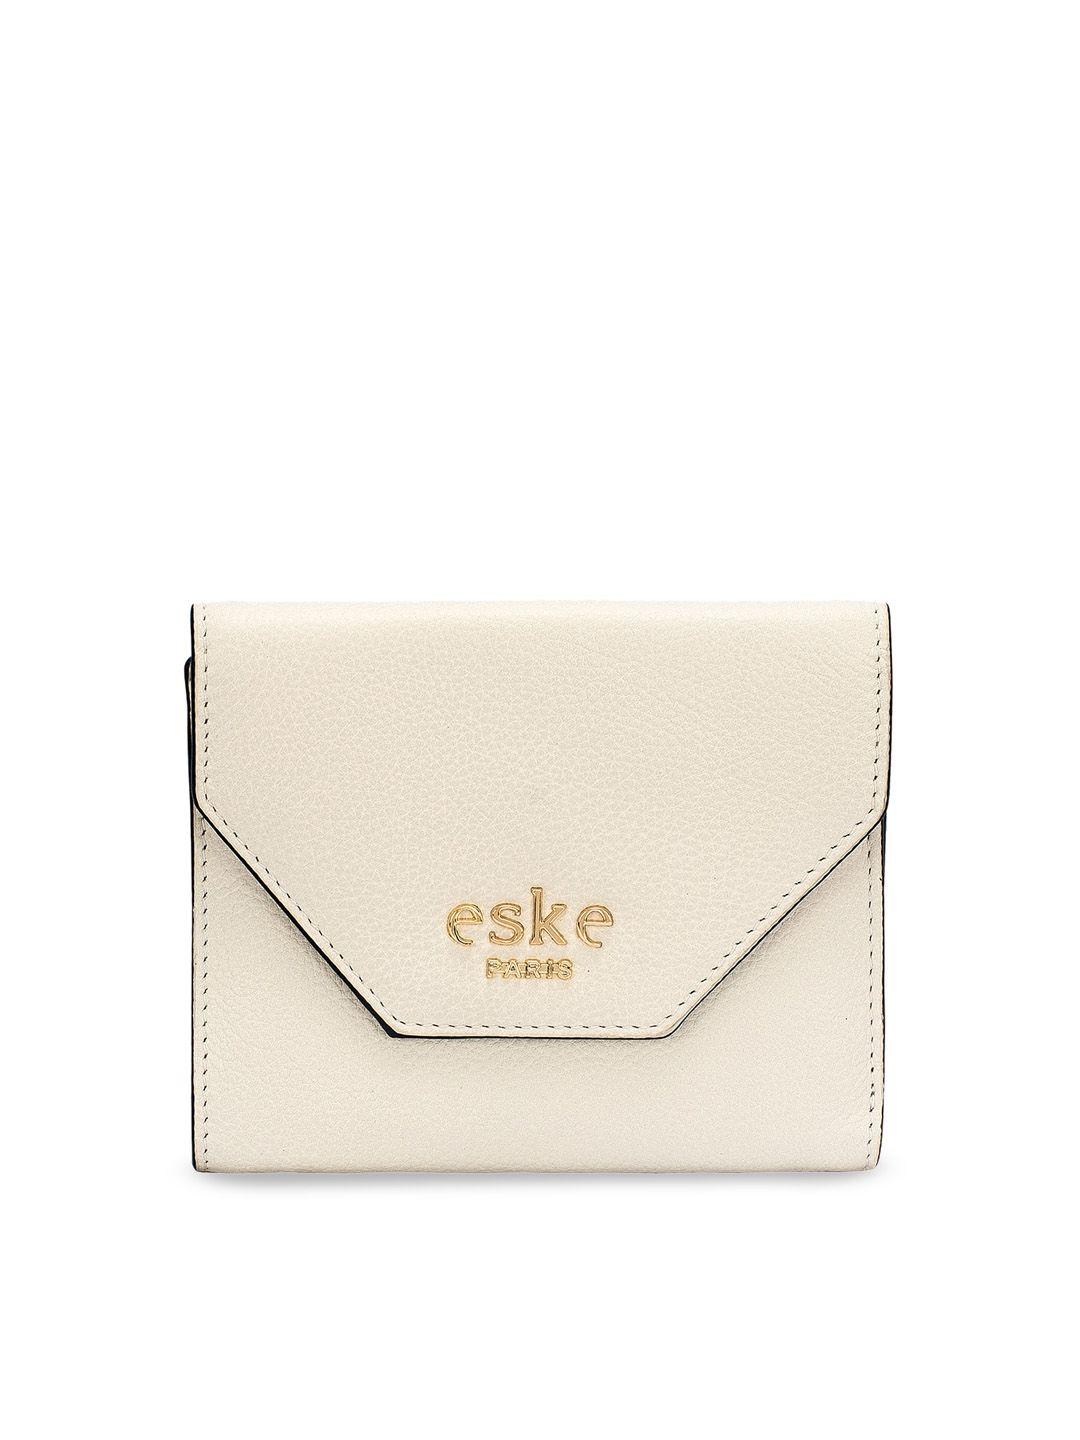 eske-women-white-solid-two-fold-leather-wallet